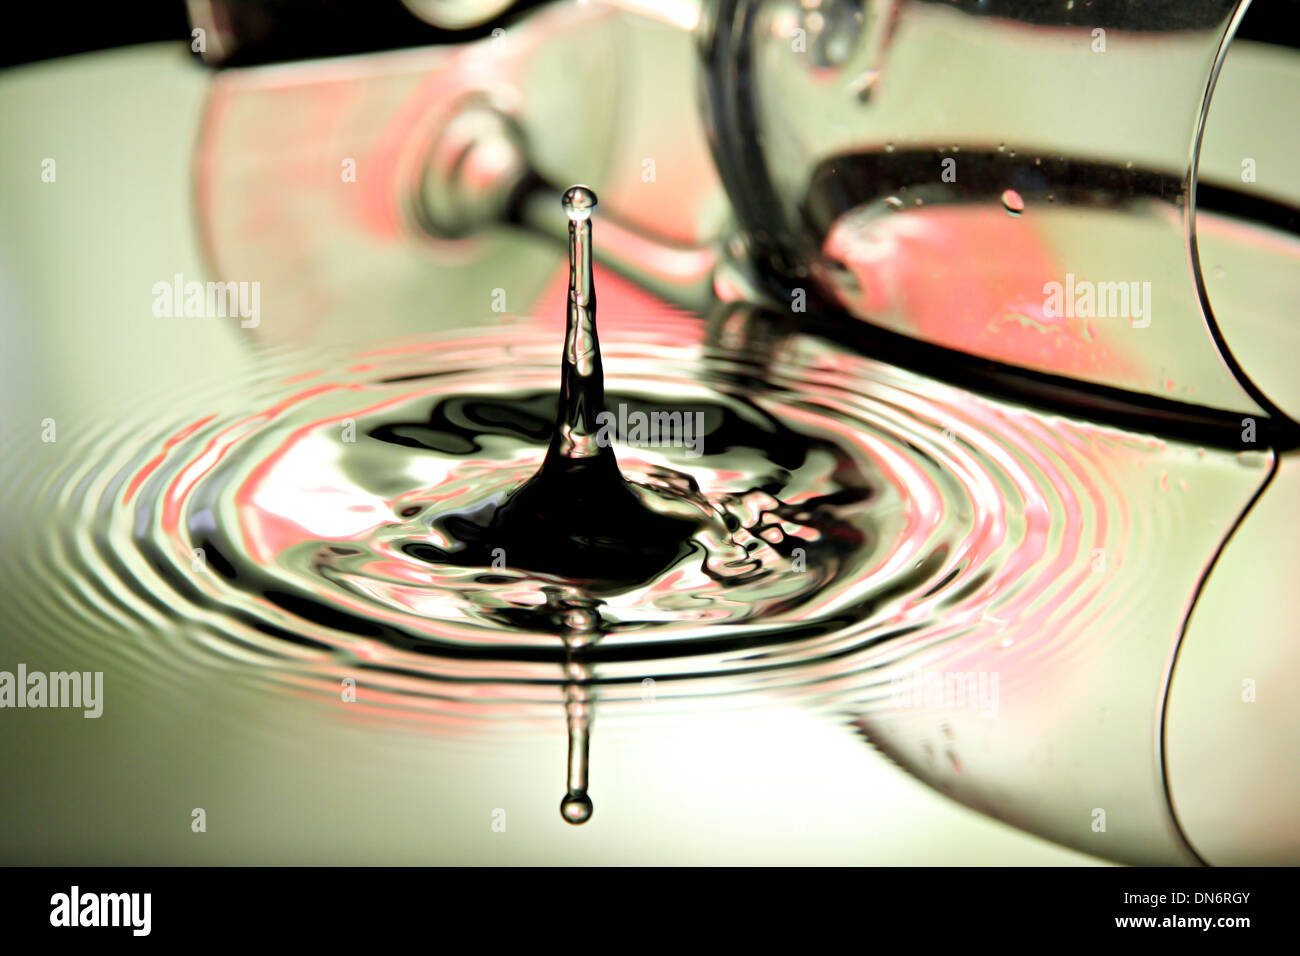 La Foto di gocce di acqua e il vetro nel colpo. Foto Stock